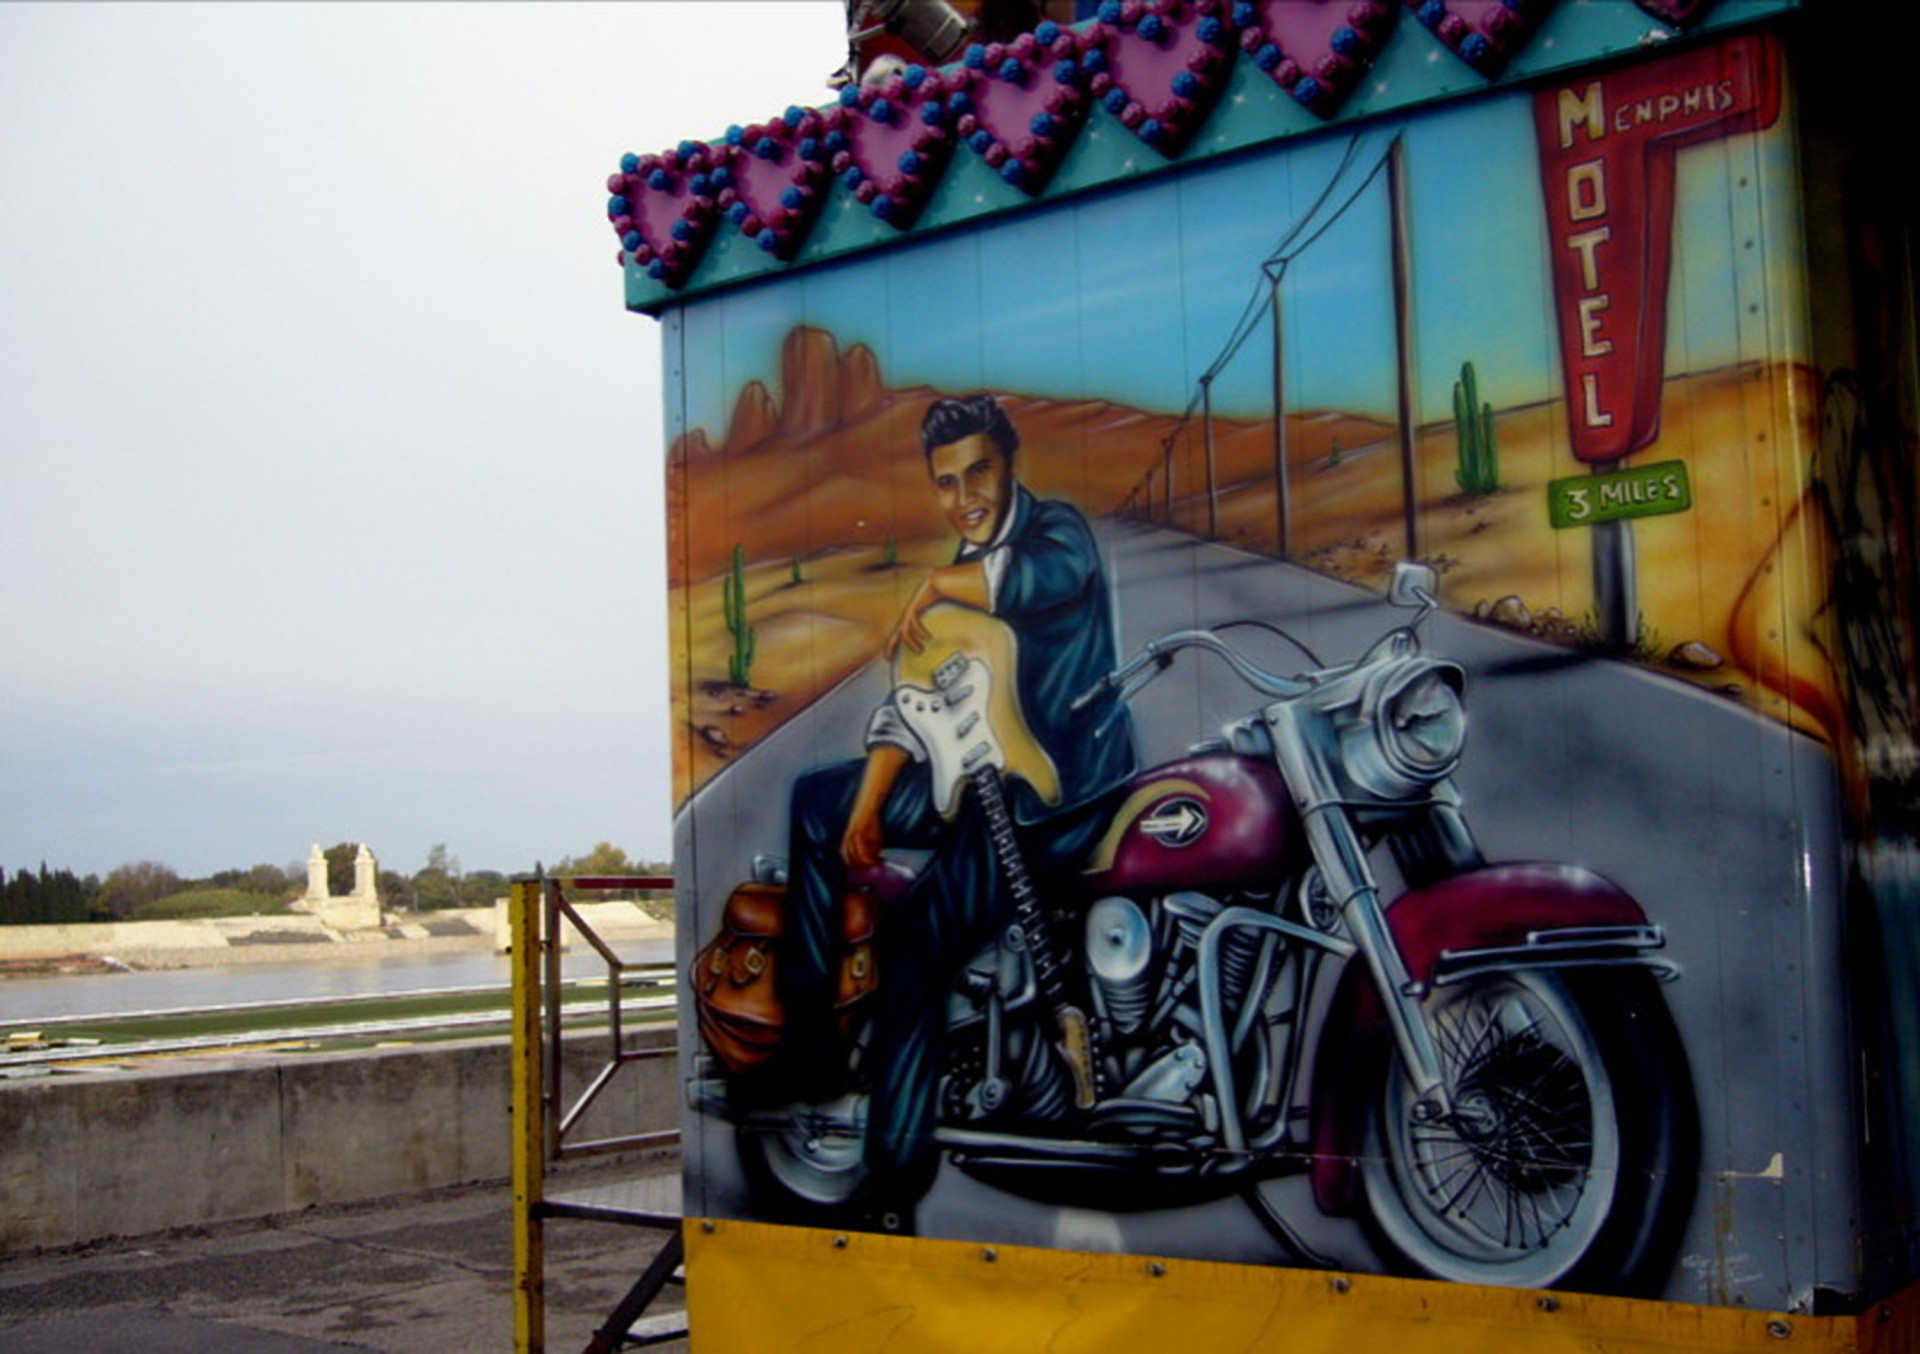 Elvis Presley: incríveis homenagens ao Rei do Rock em arte urbana